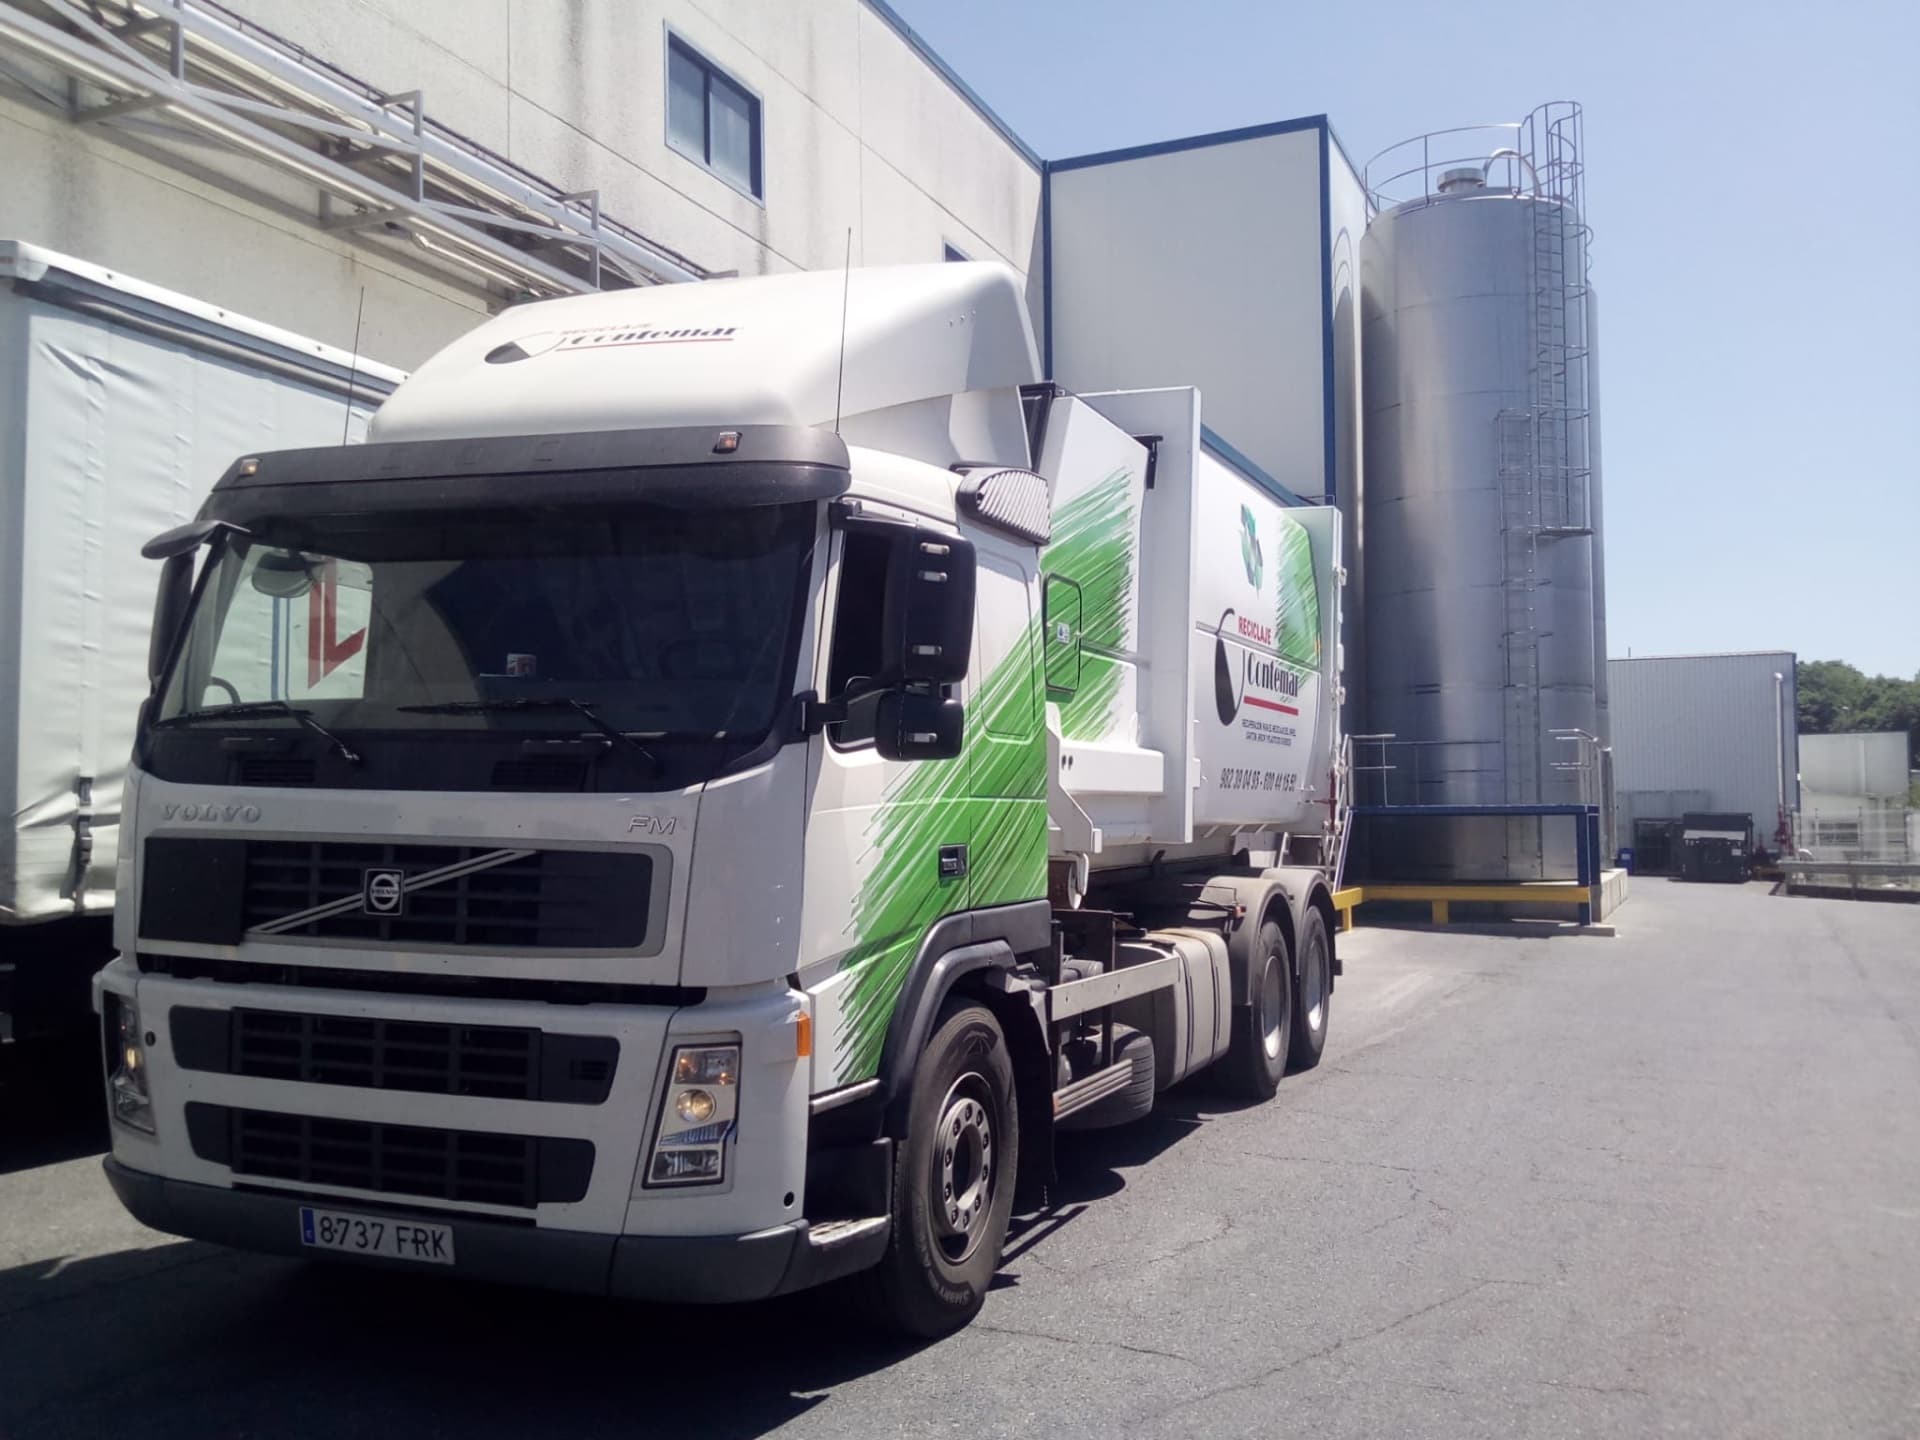 Nuevo servicio de recogida de residuos con camión recolector